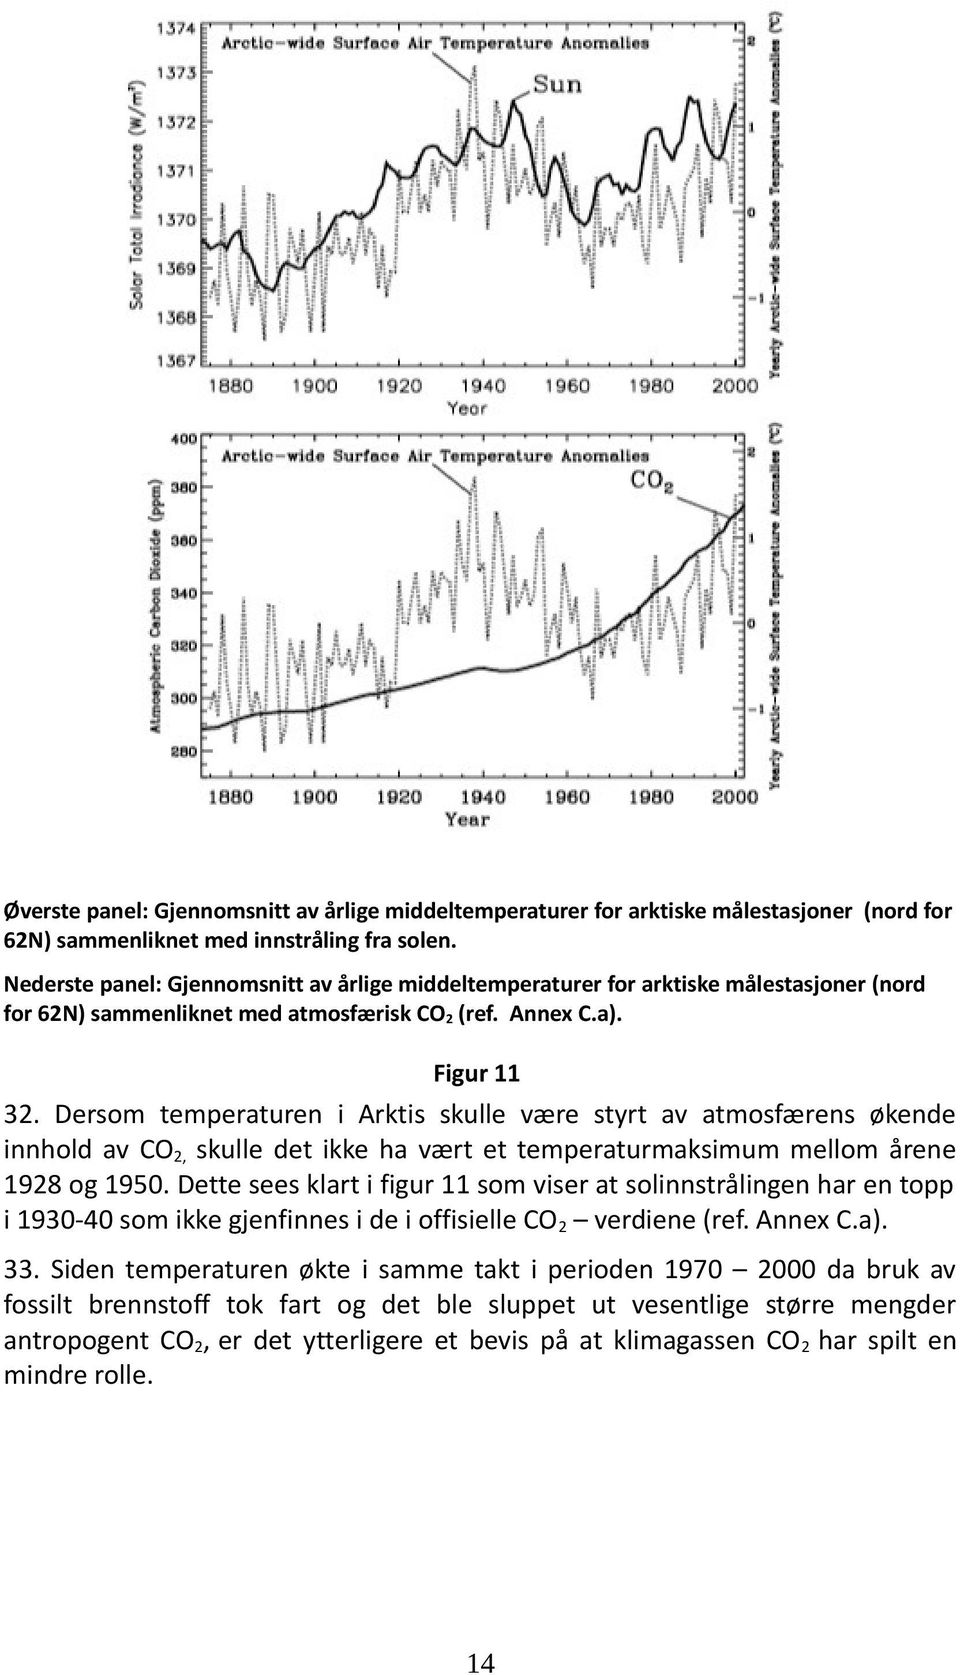 Dersom temperaturen i Arktis skulle være styrt av atmosfærens økende innhold av CO2, skulle det ikke ha vært et temperaturmaksimum mellom årene 1928 og 1950.